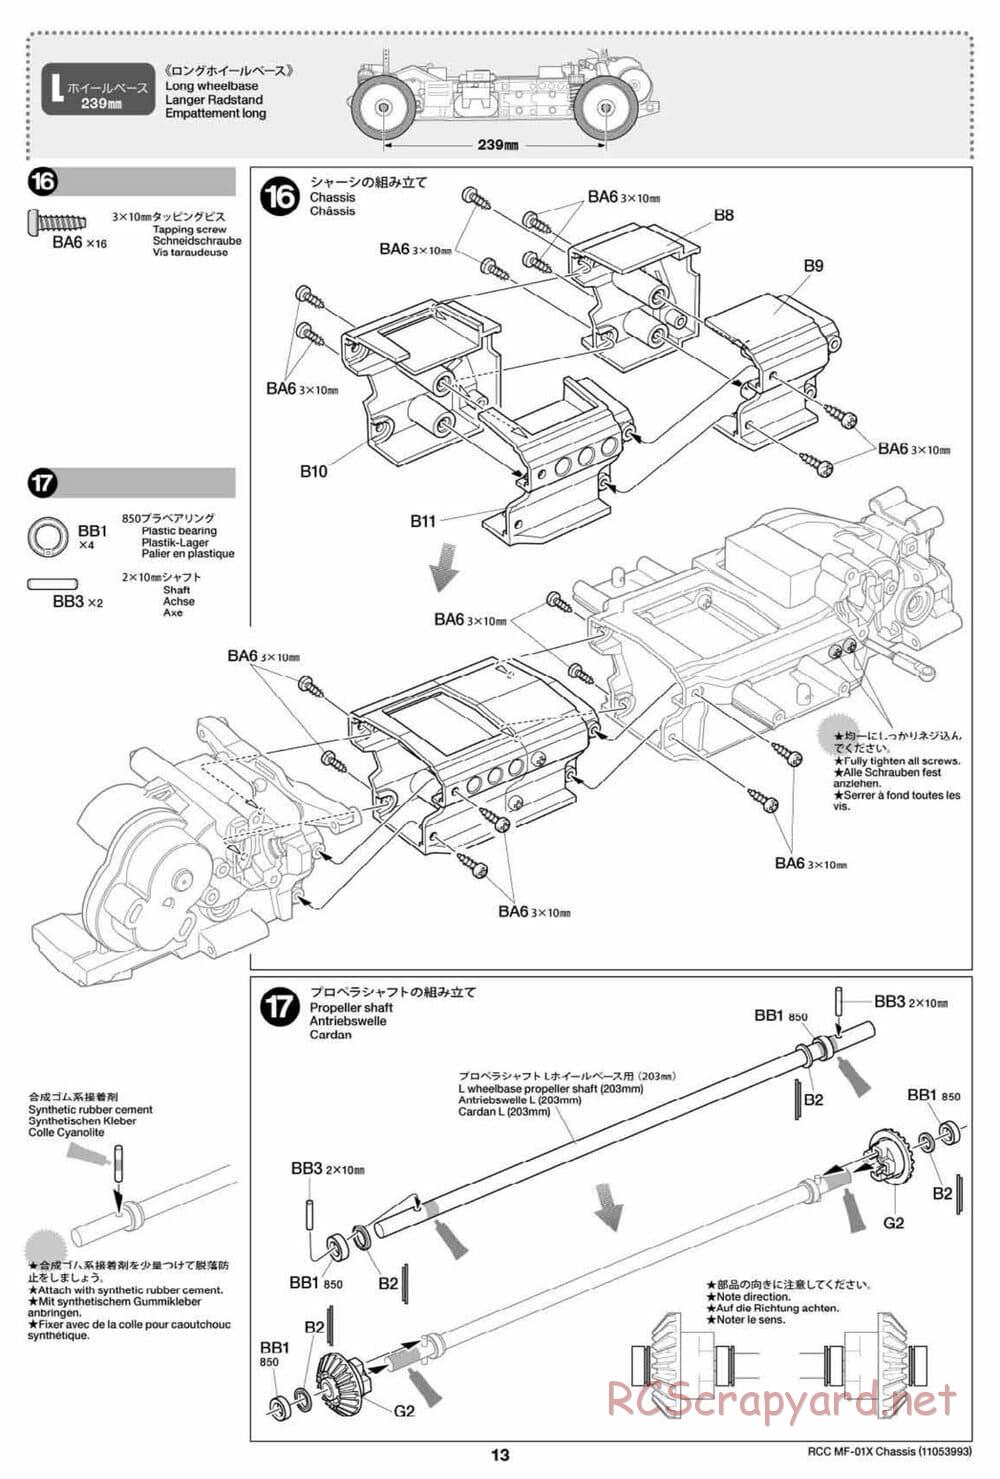 Tamiya - MF-01X Chassis - Manual - Page 13